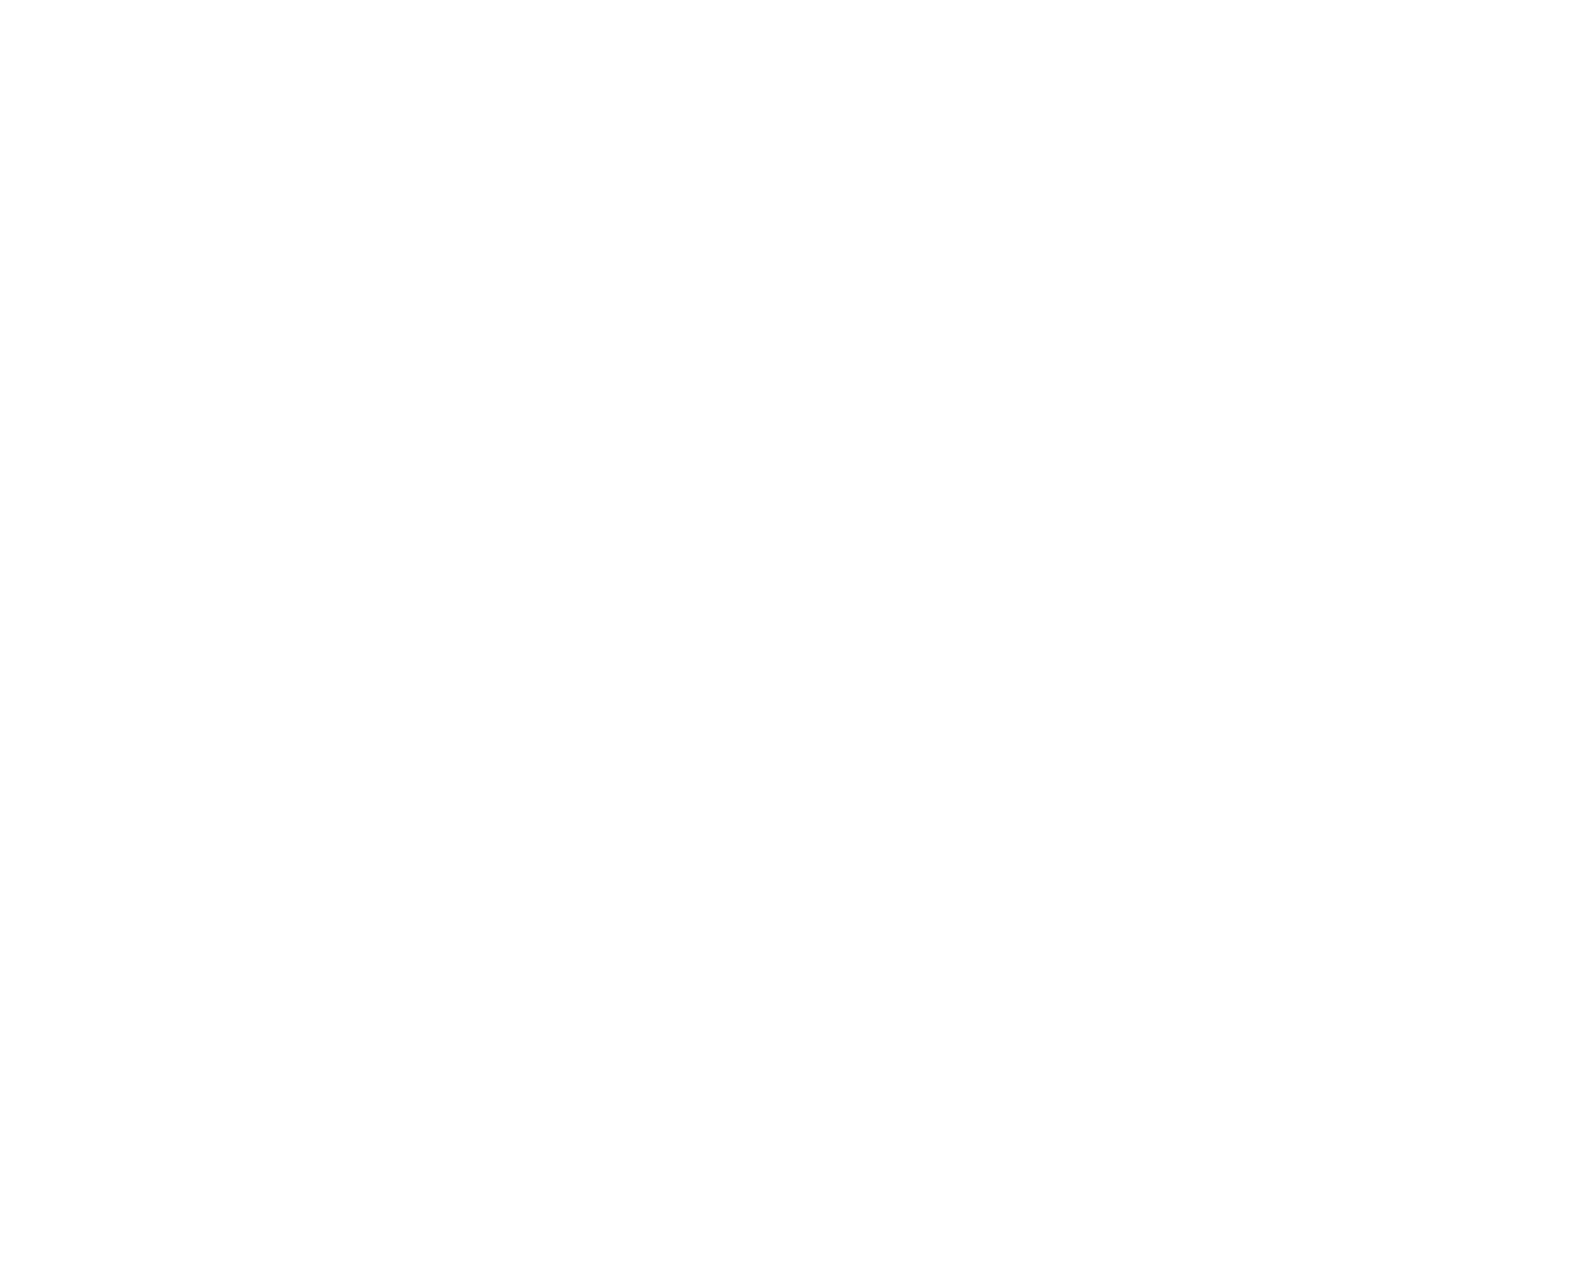 Noodles & Company logo pour fonds sombres (PNG transparent)